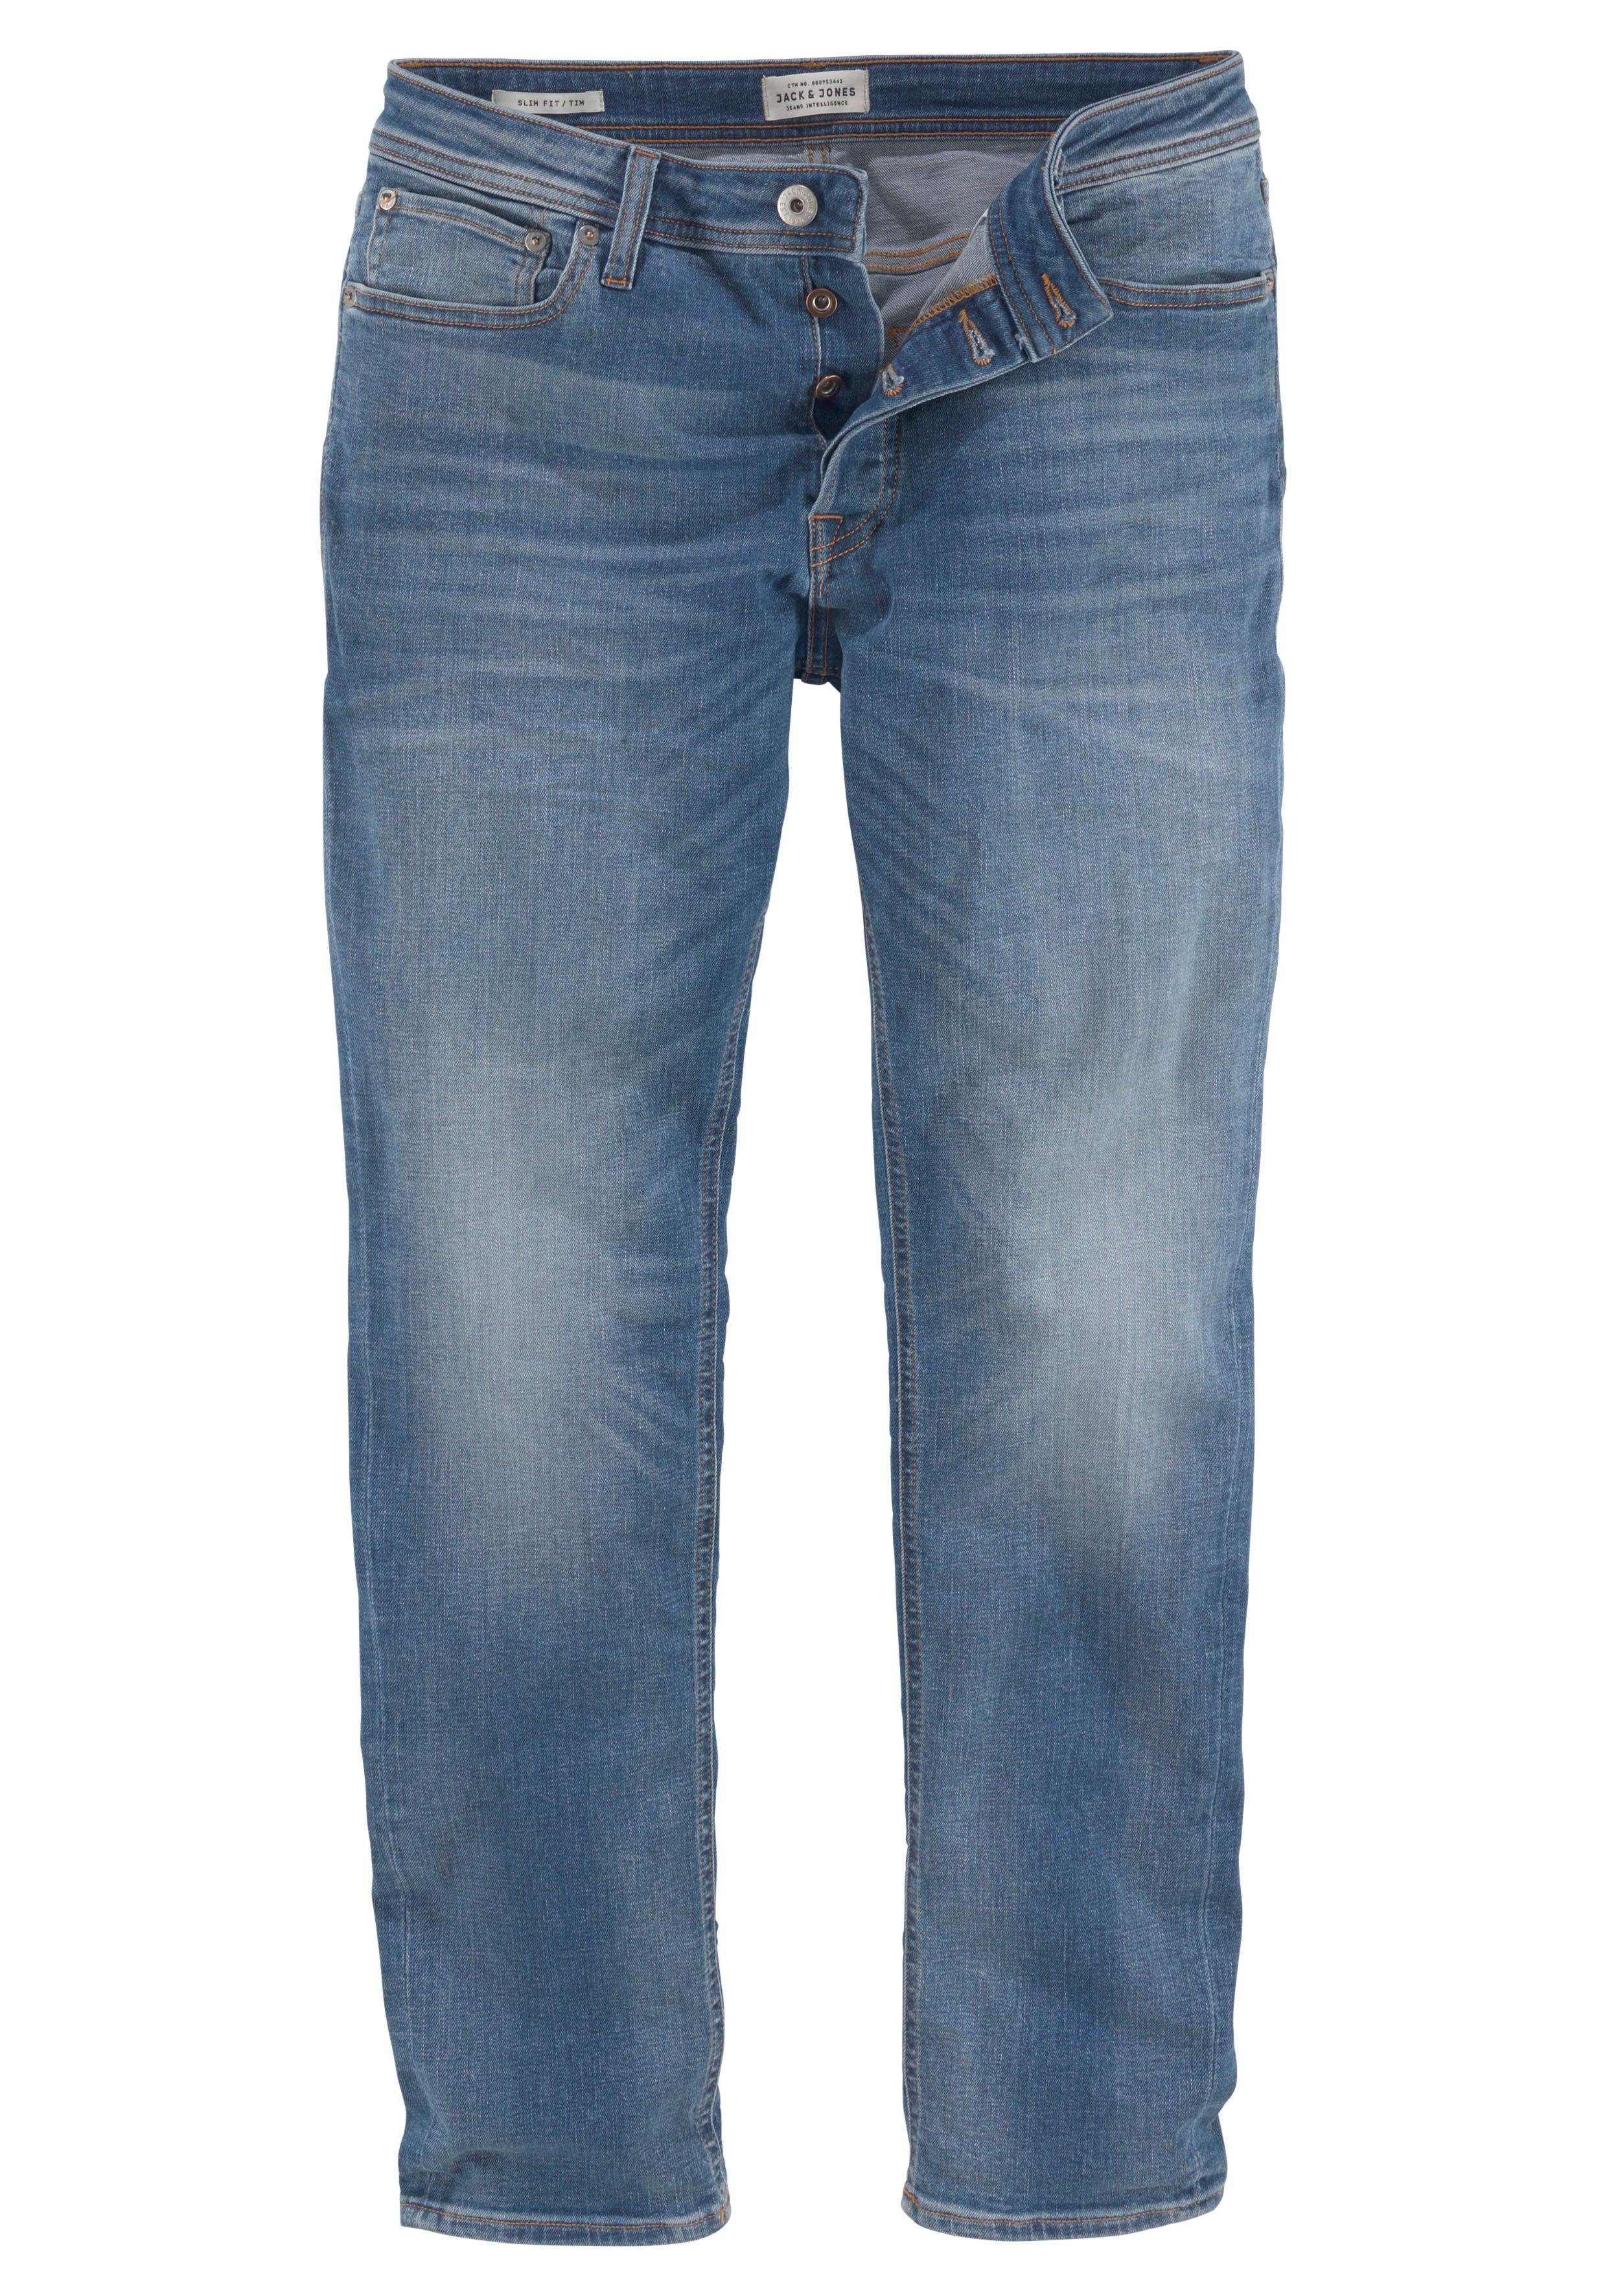 & JJITIM 783 AM Jack Jones JJORIGINAL light-blue Slim-fit-Jeans